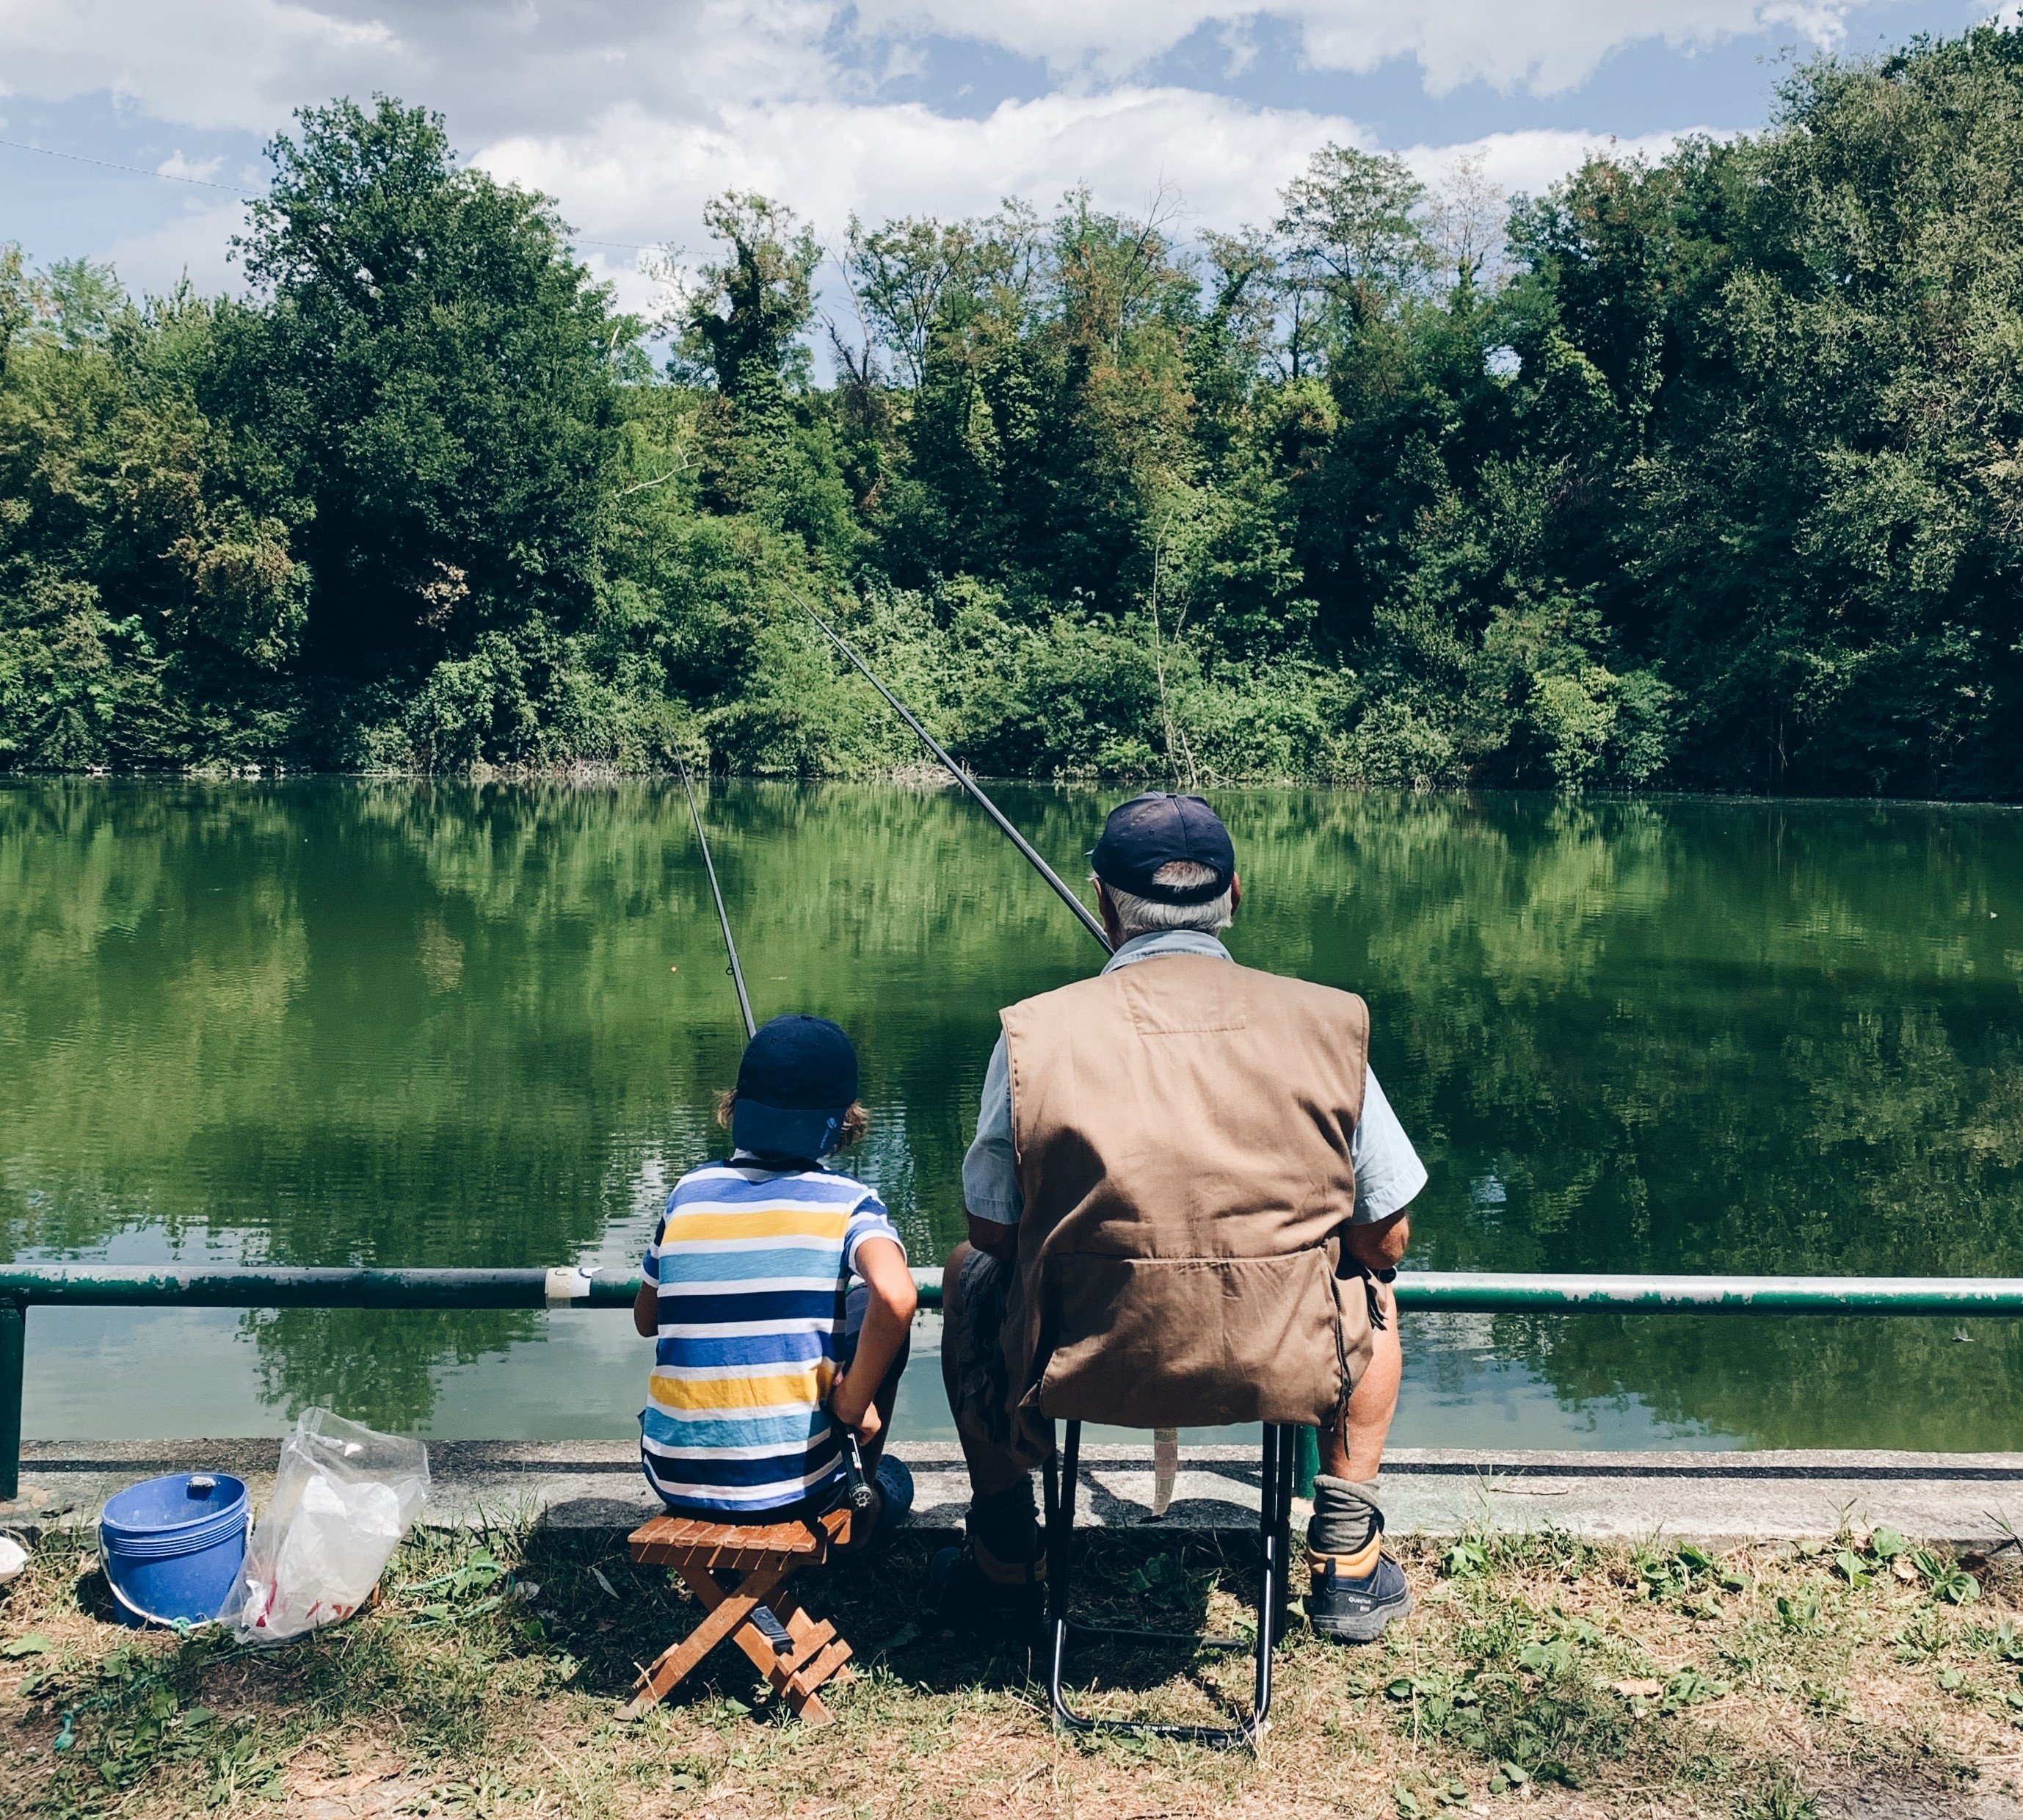 Tim et Jared partageaient une passion pour la pêche. | Source : Unsplash